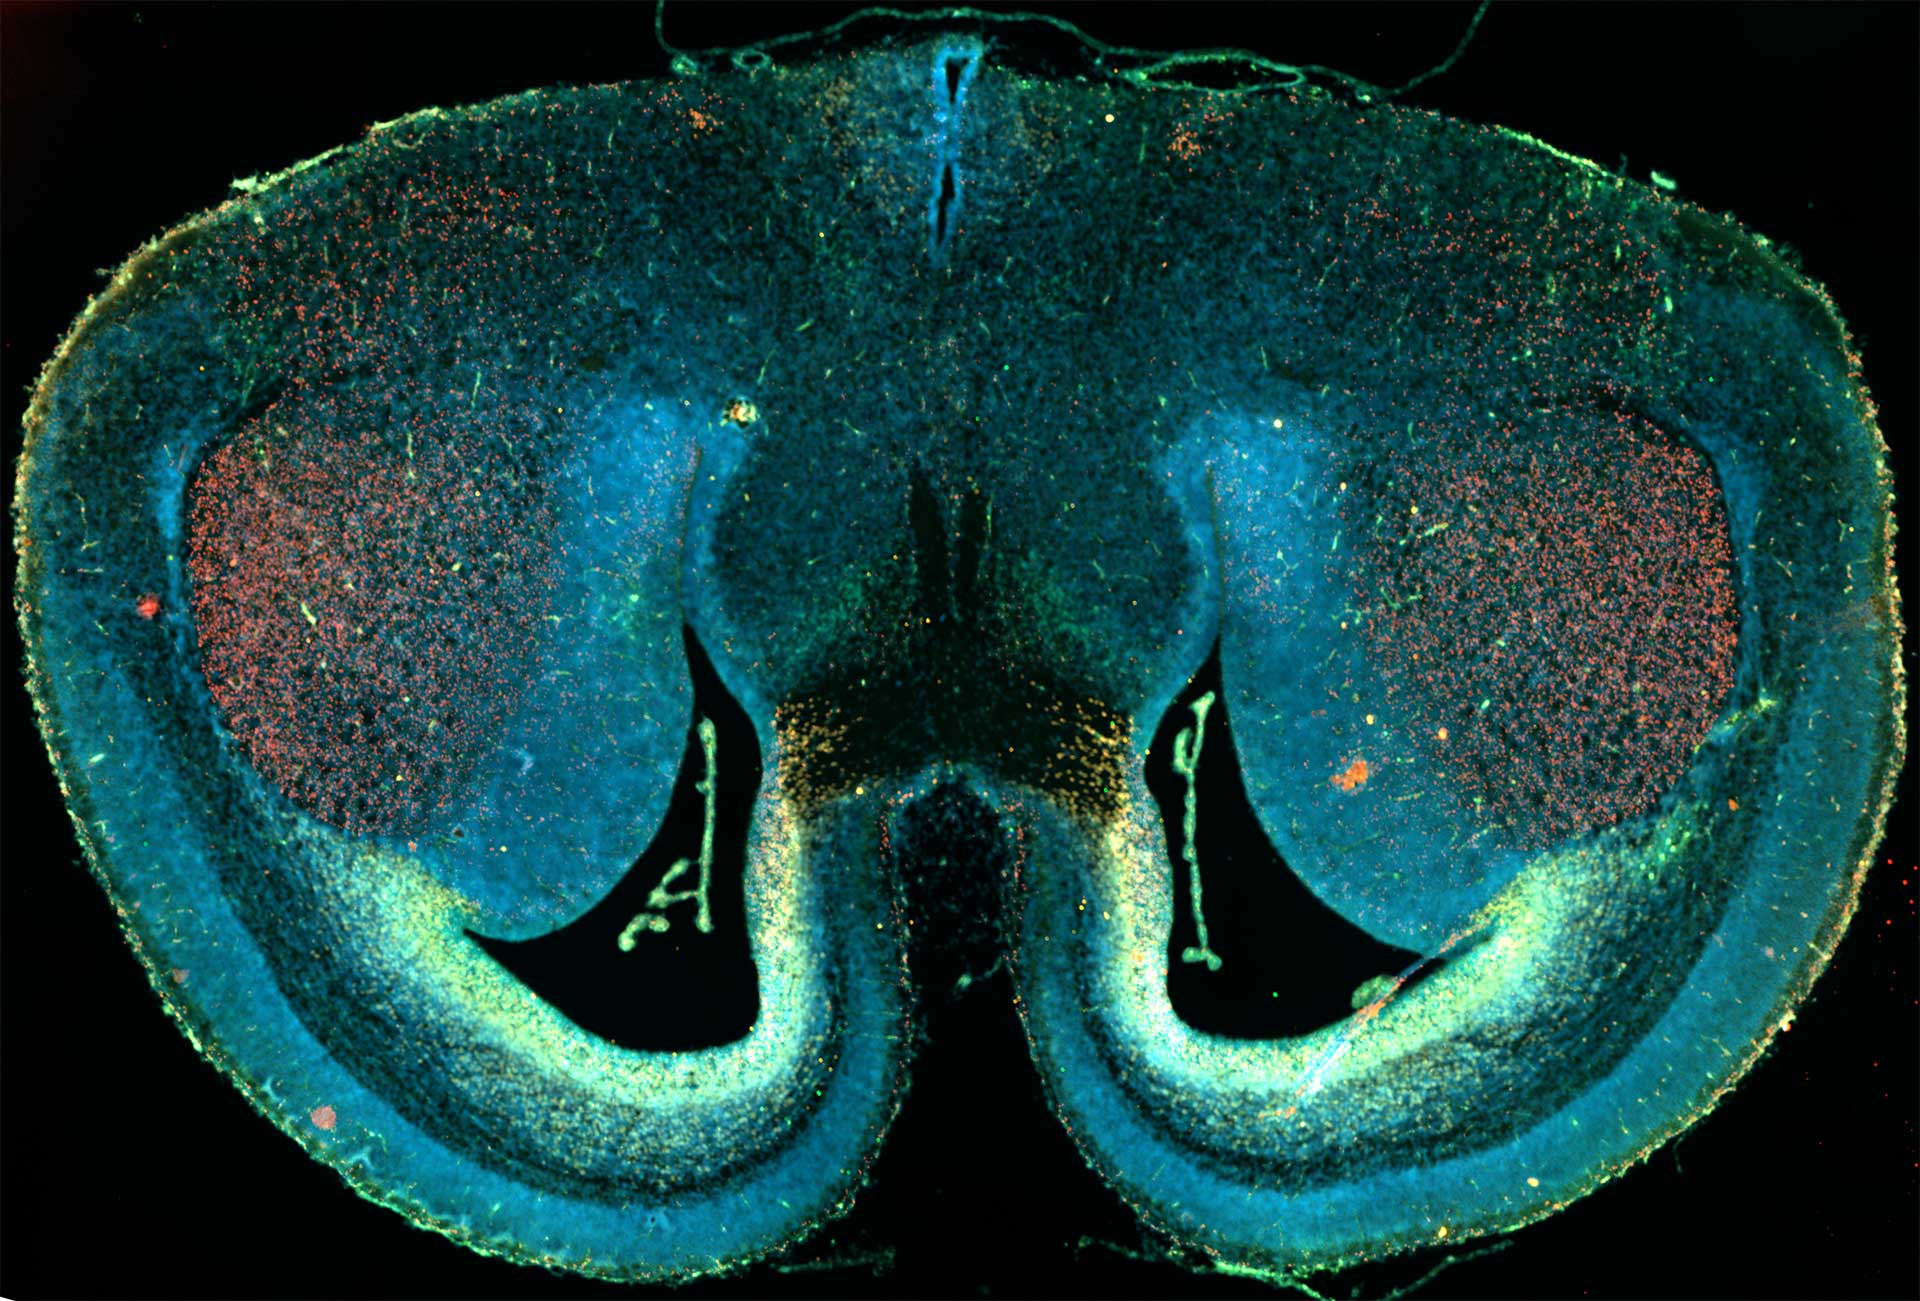 Mäusehirnschnitt, aufgenommen mit Weitfeld-Fluoreszenzmikroskopie und Kachelaufnahmen. Probe mit freundlicher Genehmigung von D. Mi, School of Life Sciences, Tsinghua University, China